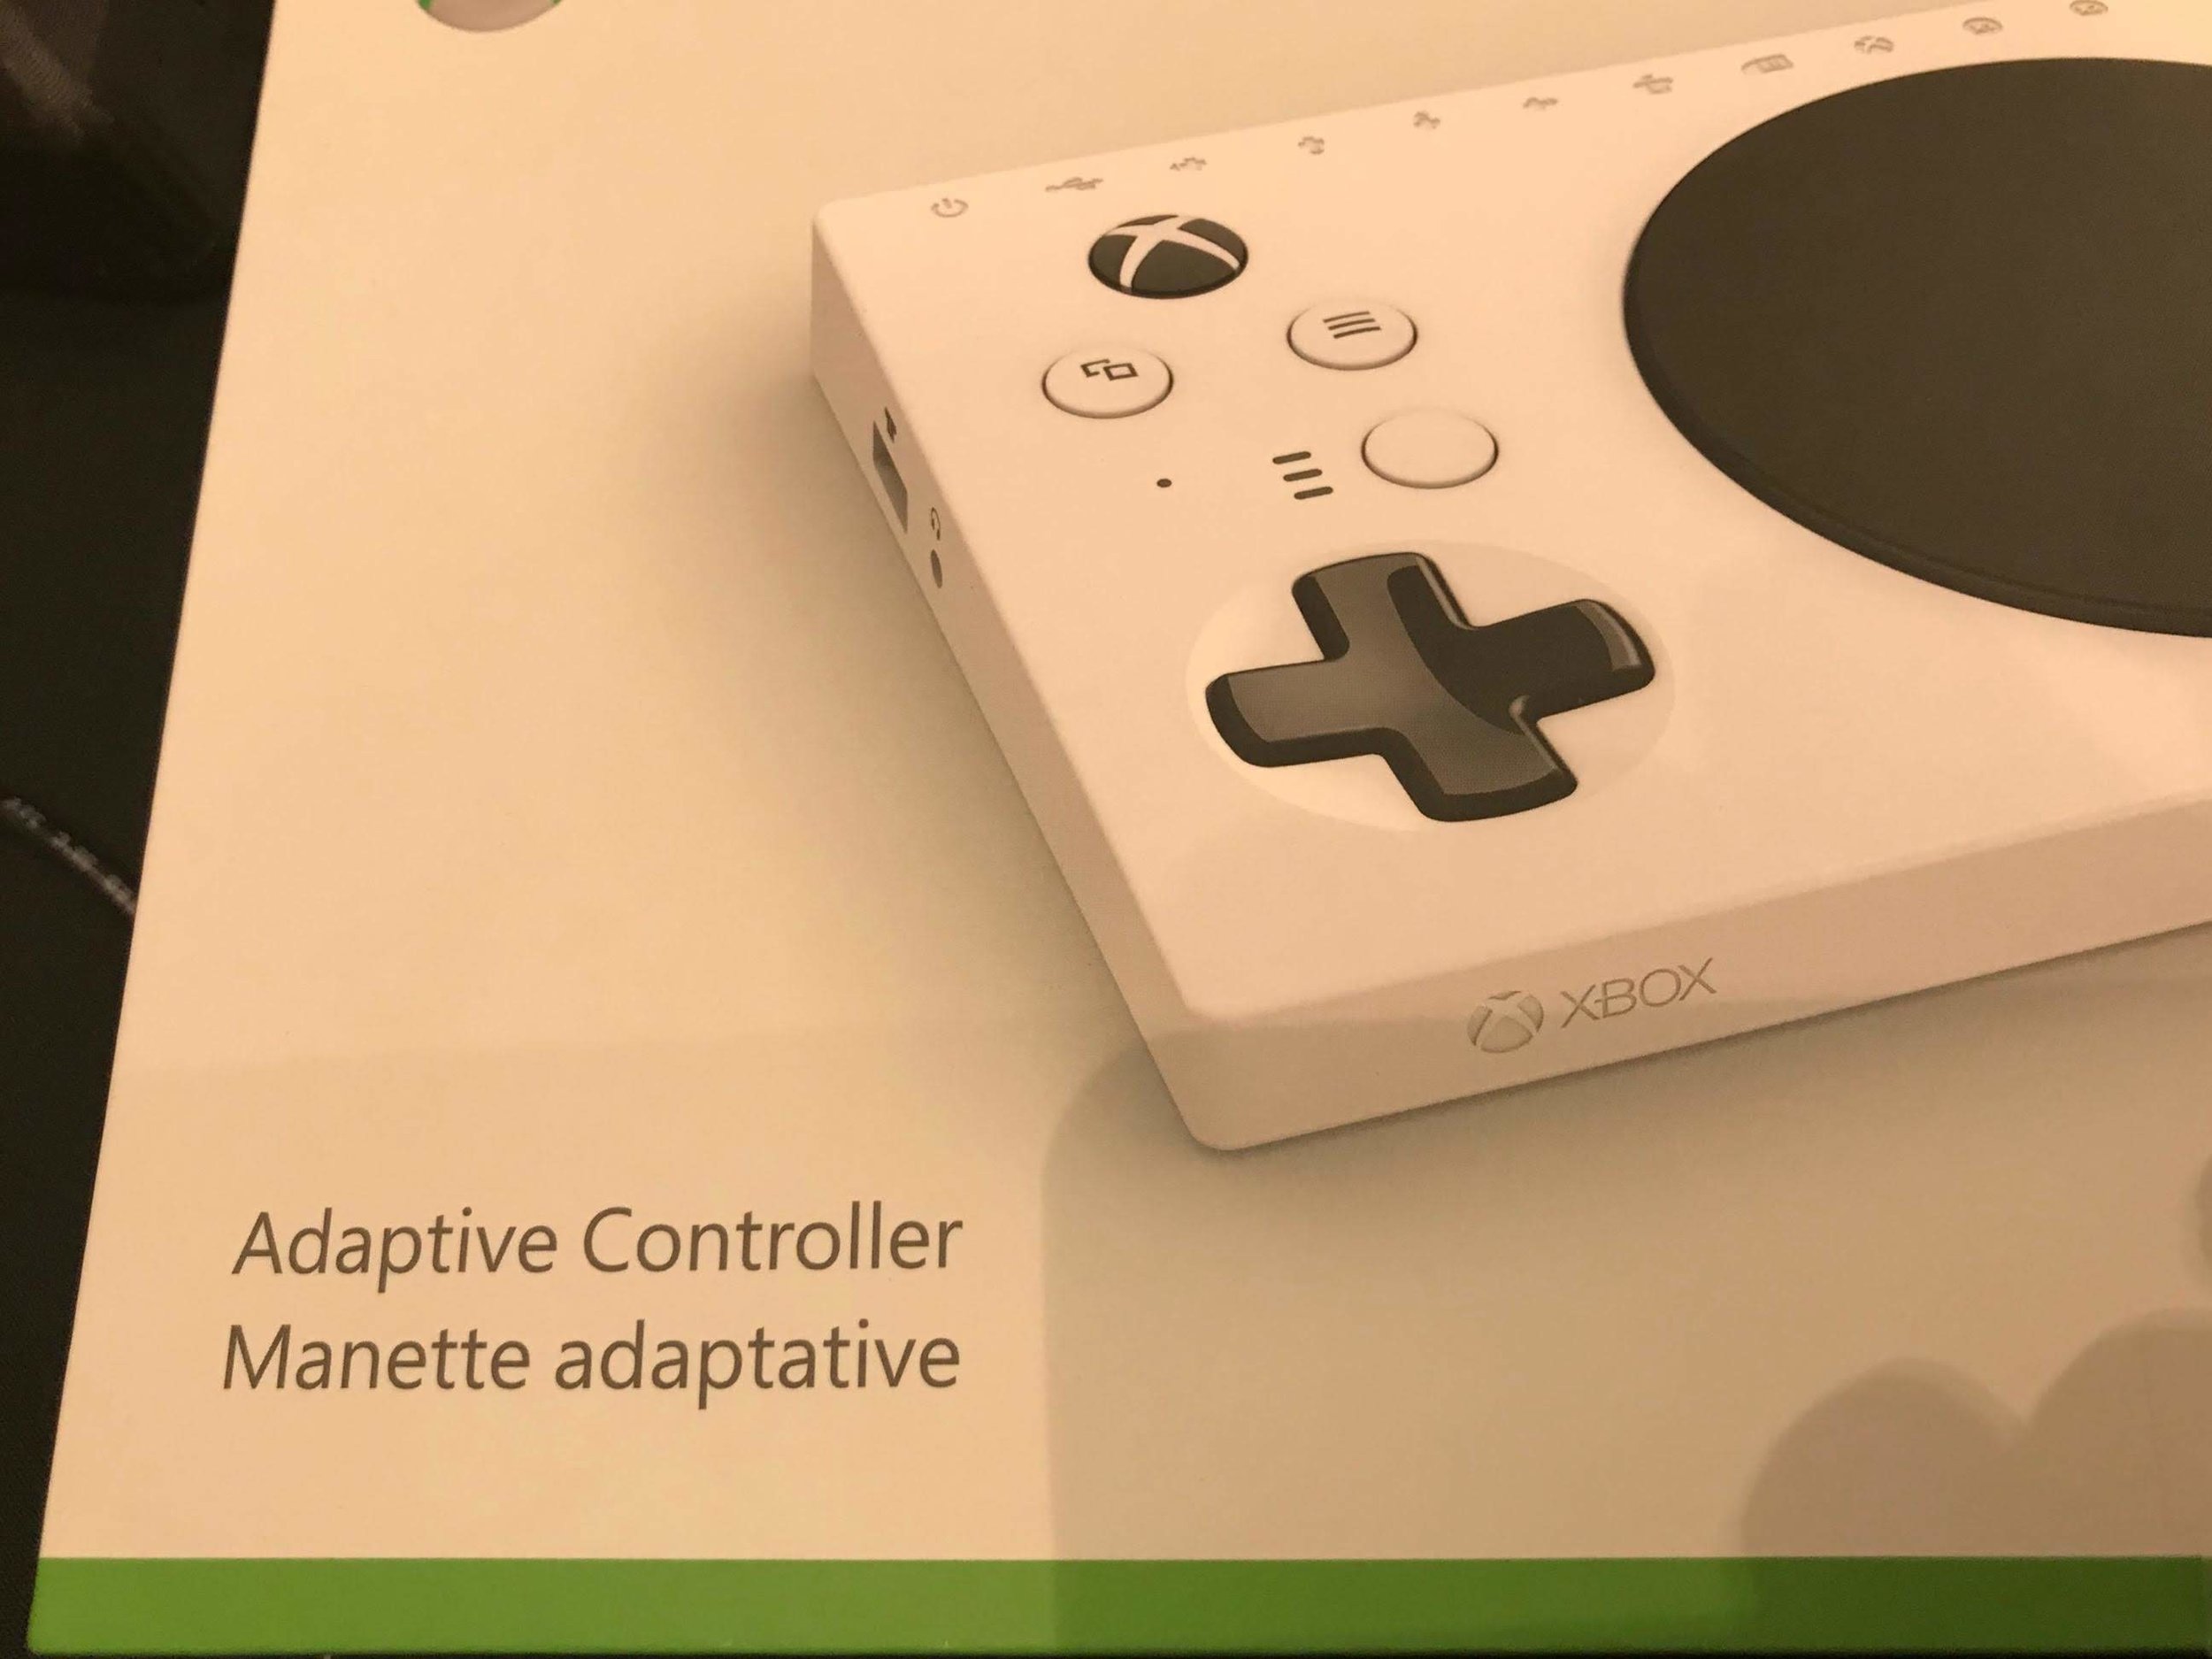  Microsoft Xbox adaptive controller in the box 